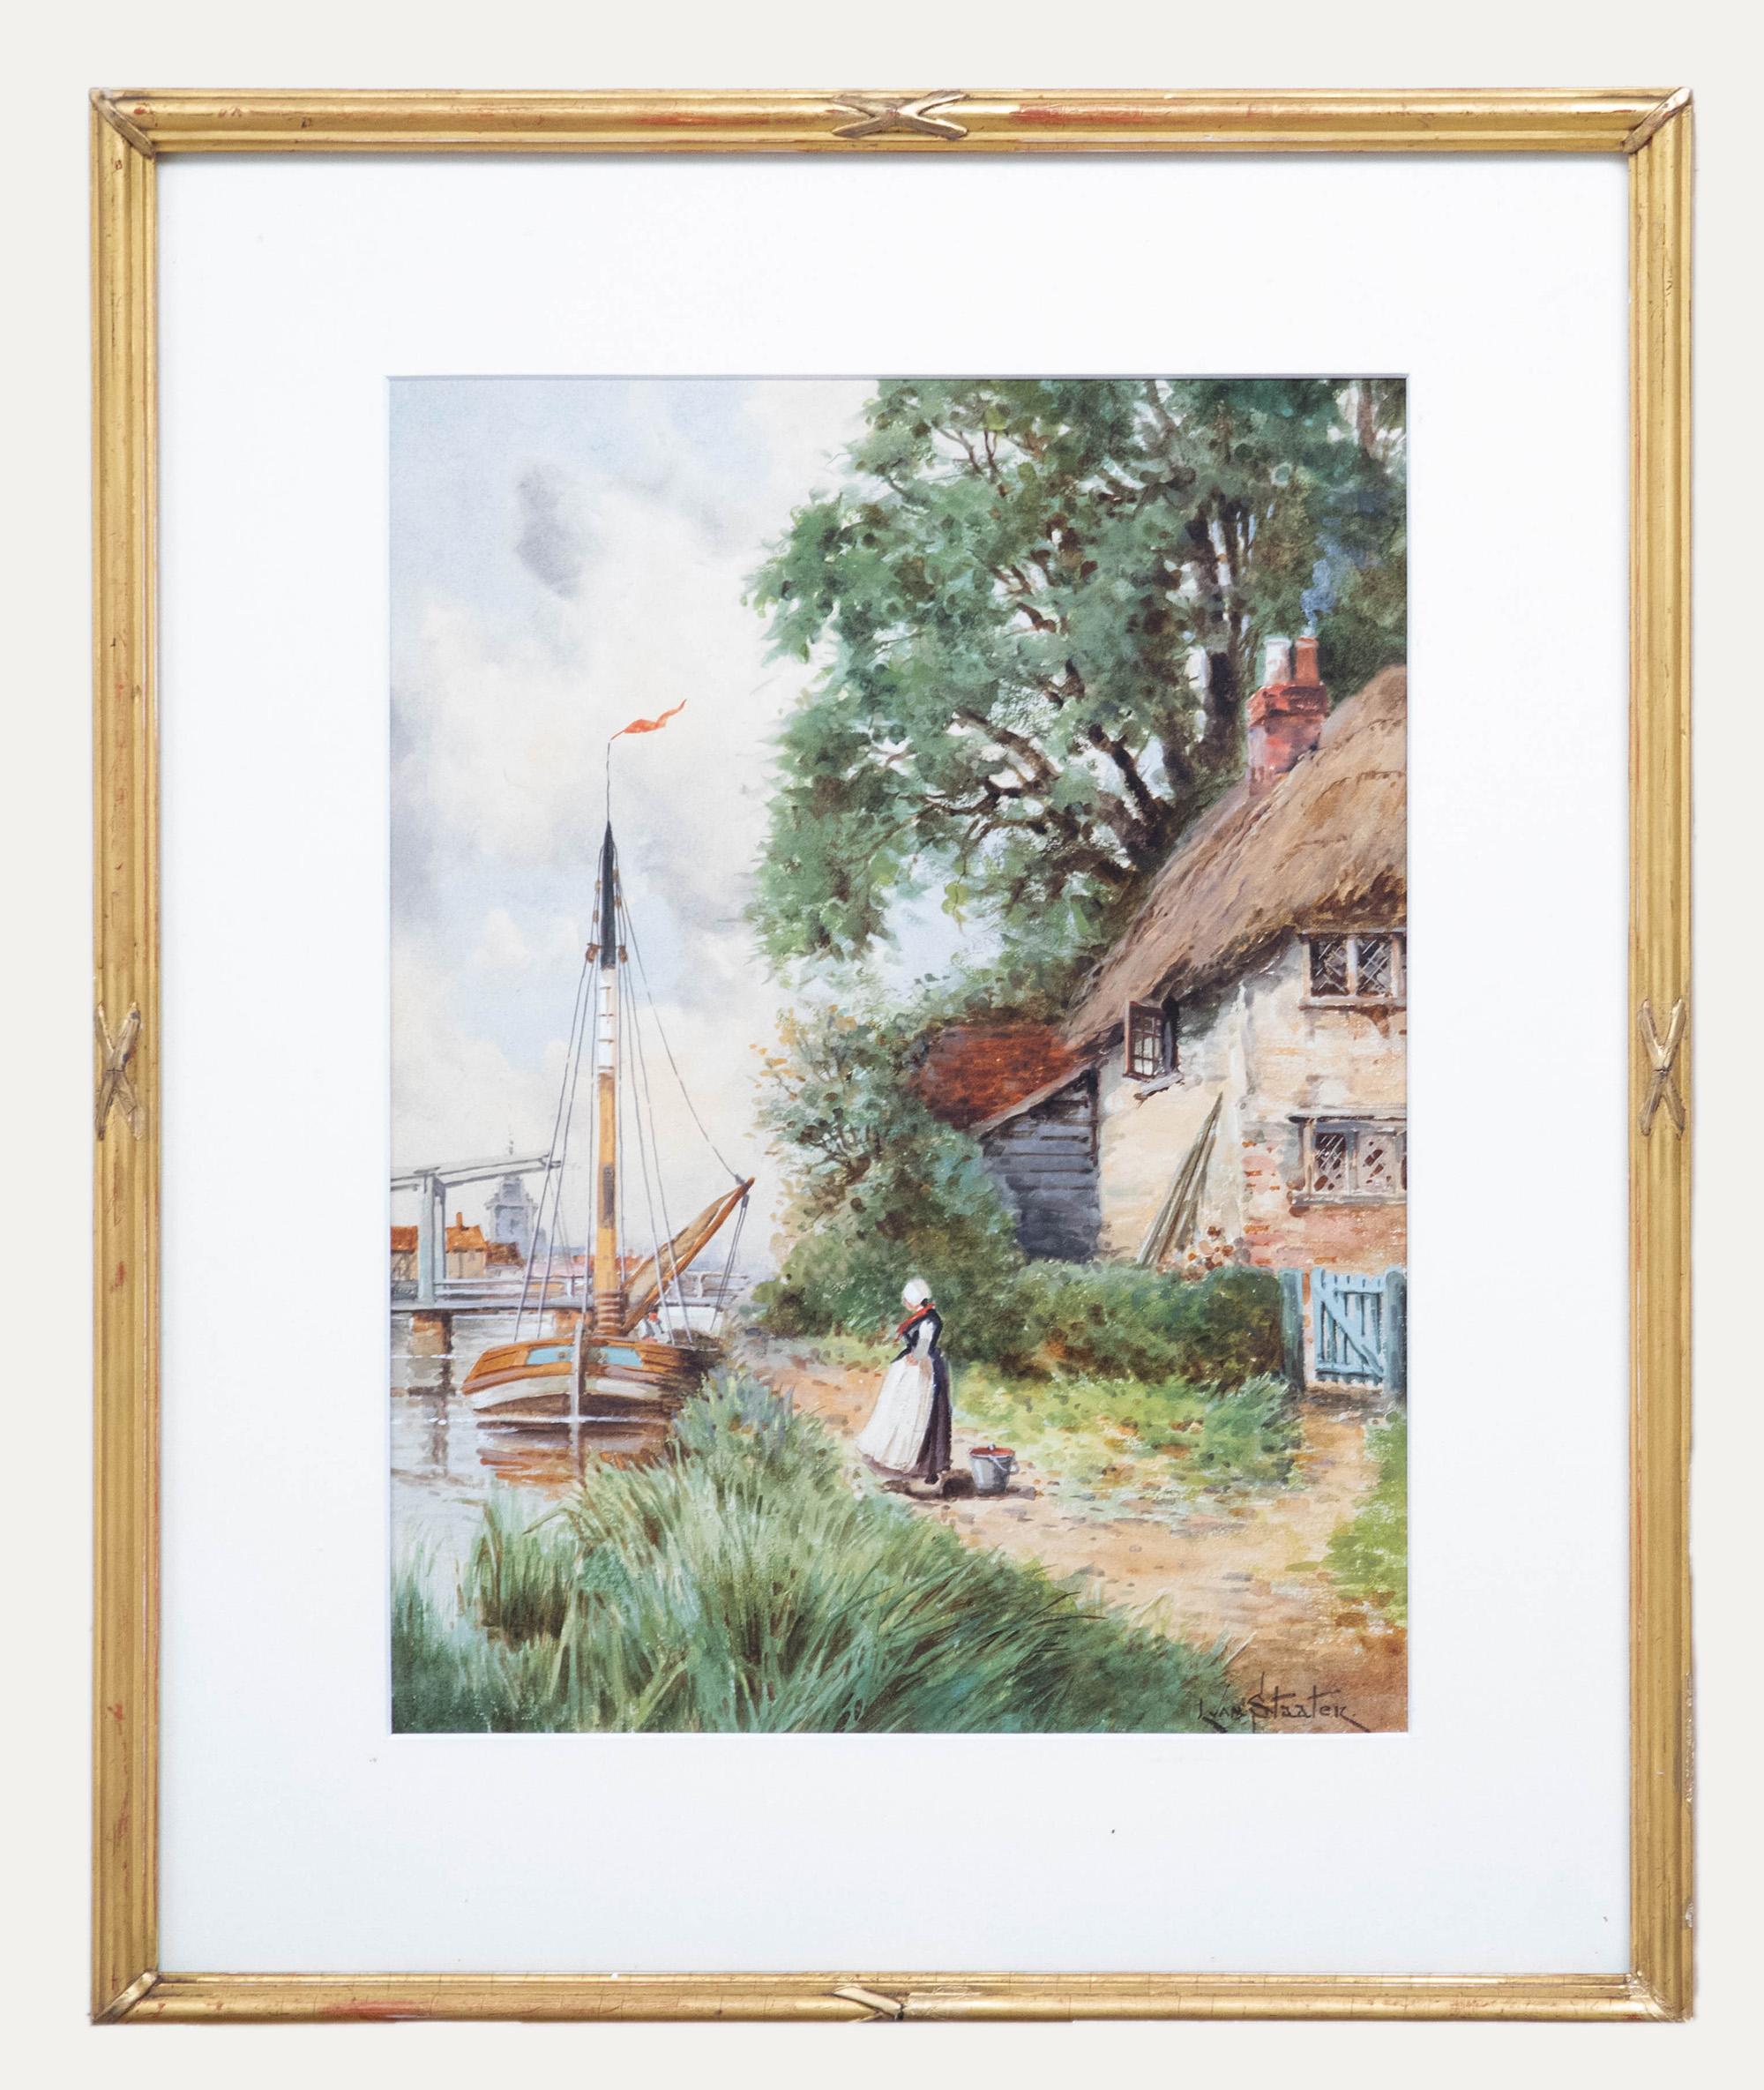 Ein Original-Aquarell des niederländischen Landschaftsmalers Louis Van Staaten, auch bekannt als Hermanus II Koekkoek (1836-1909). Signiert unten rechts. Gut präsentiert in einem dekorativen Rahmen in Goldoptik mit Kreuzbandornamenten. Auf